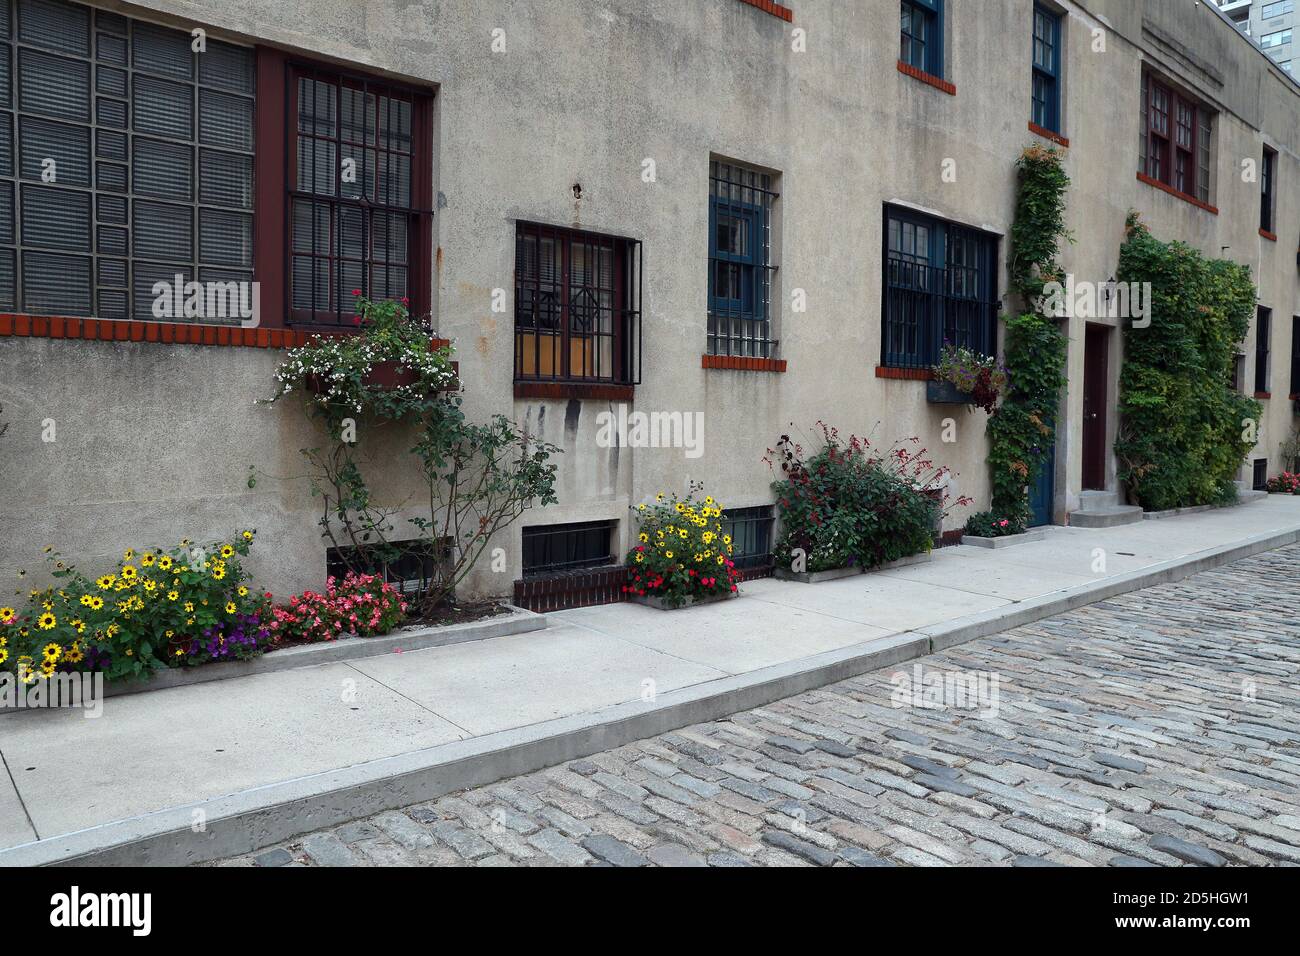 Die historischen Häuser in Washington Mews im Stadtteil Greenwich Village von New York City. Stockfoto